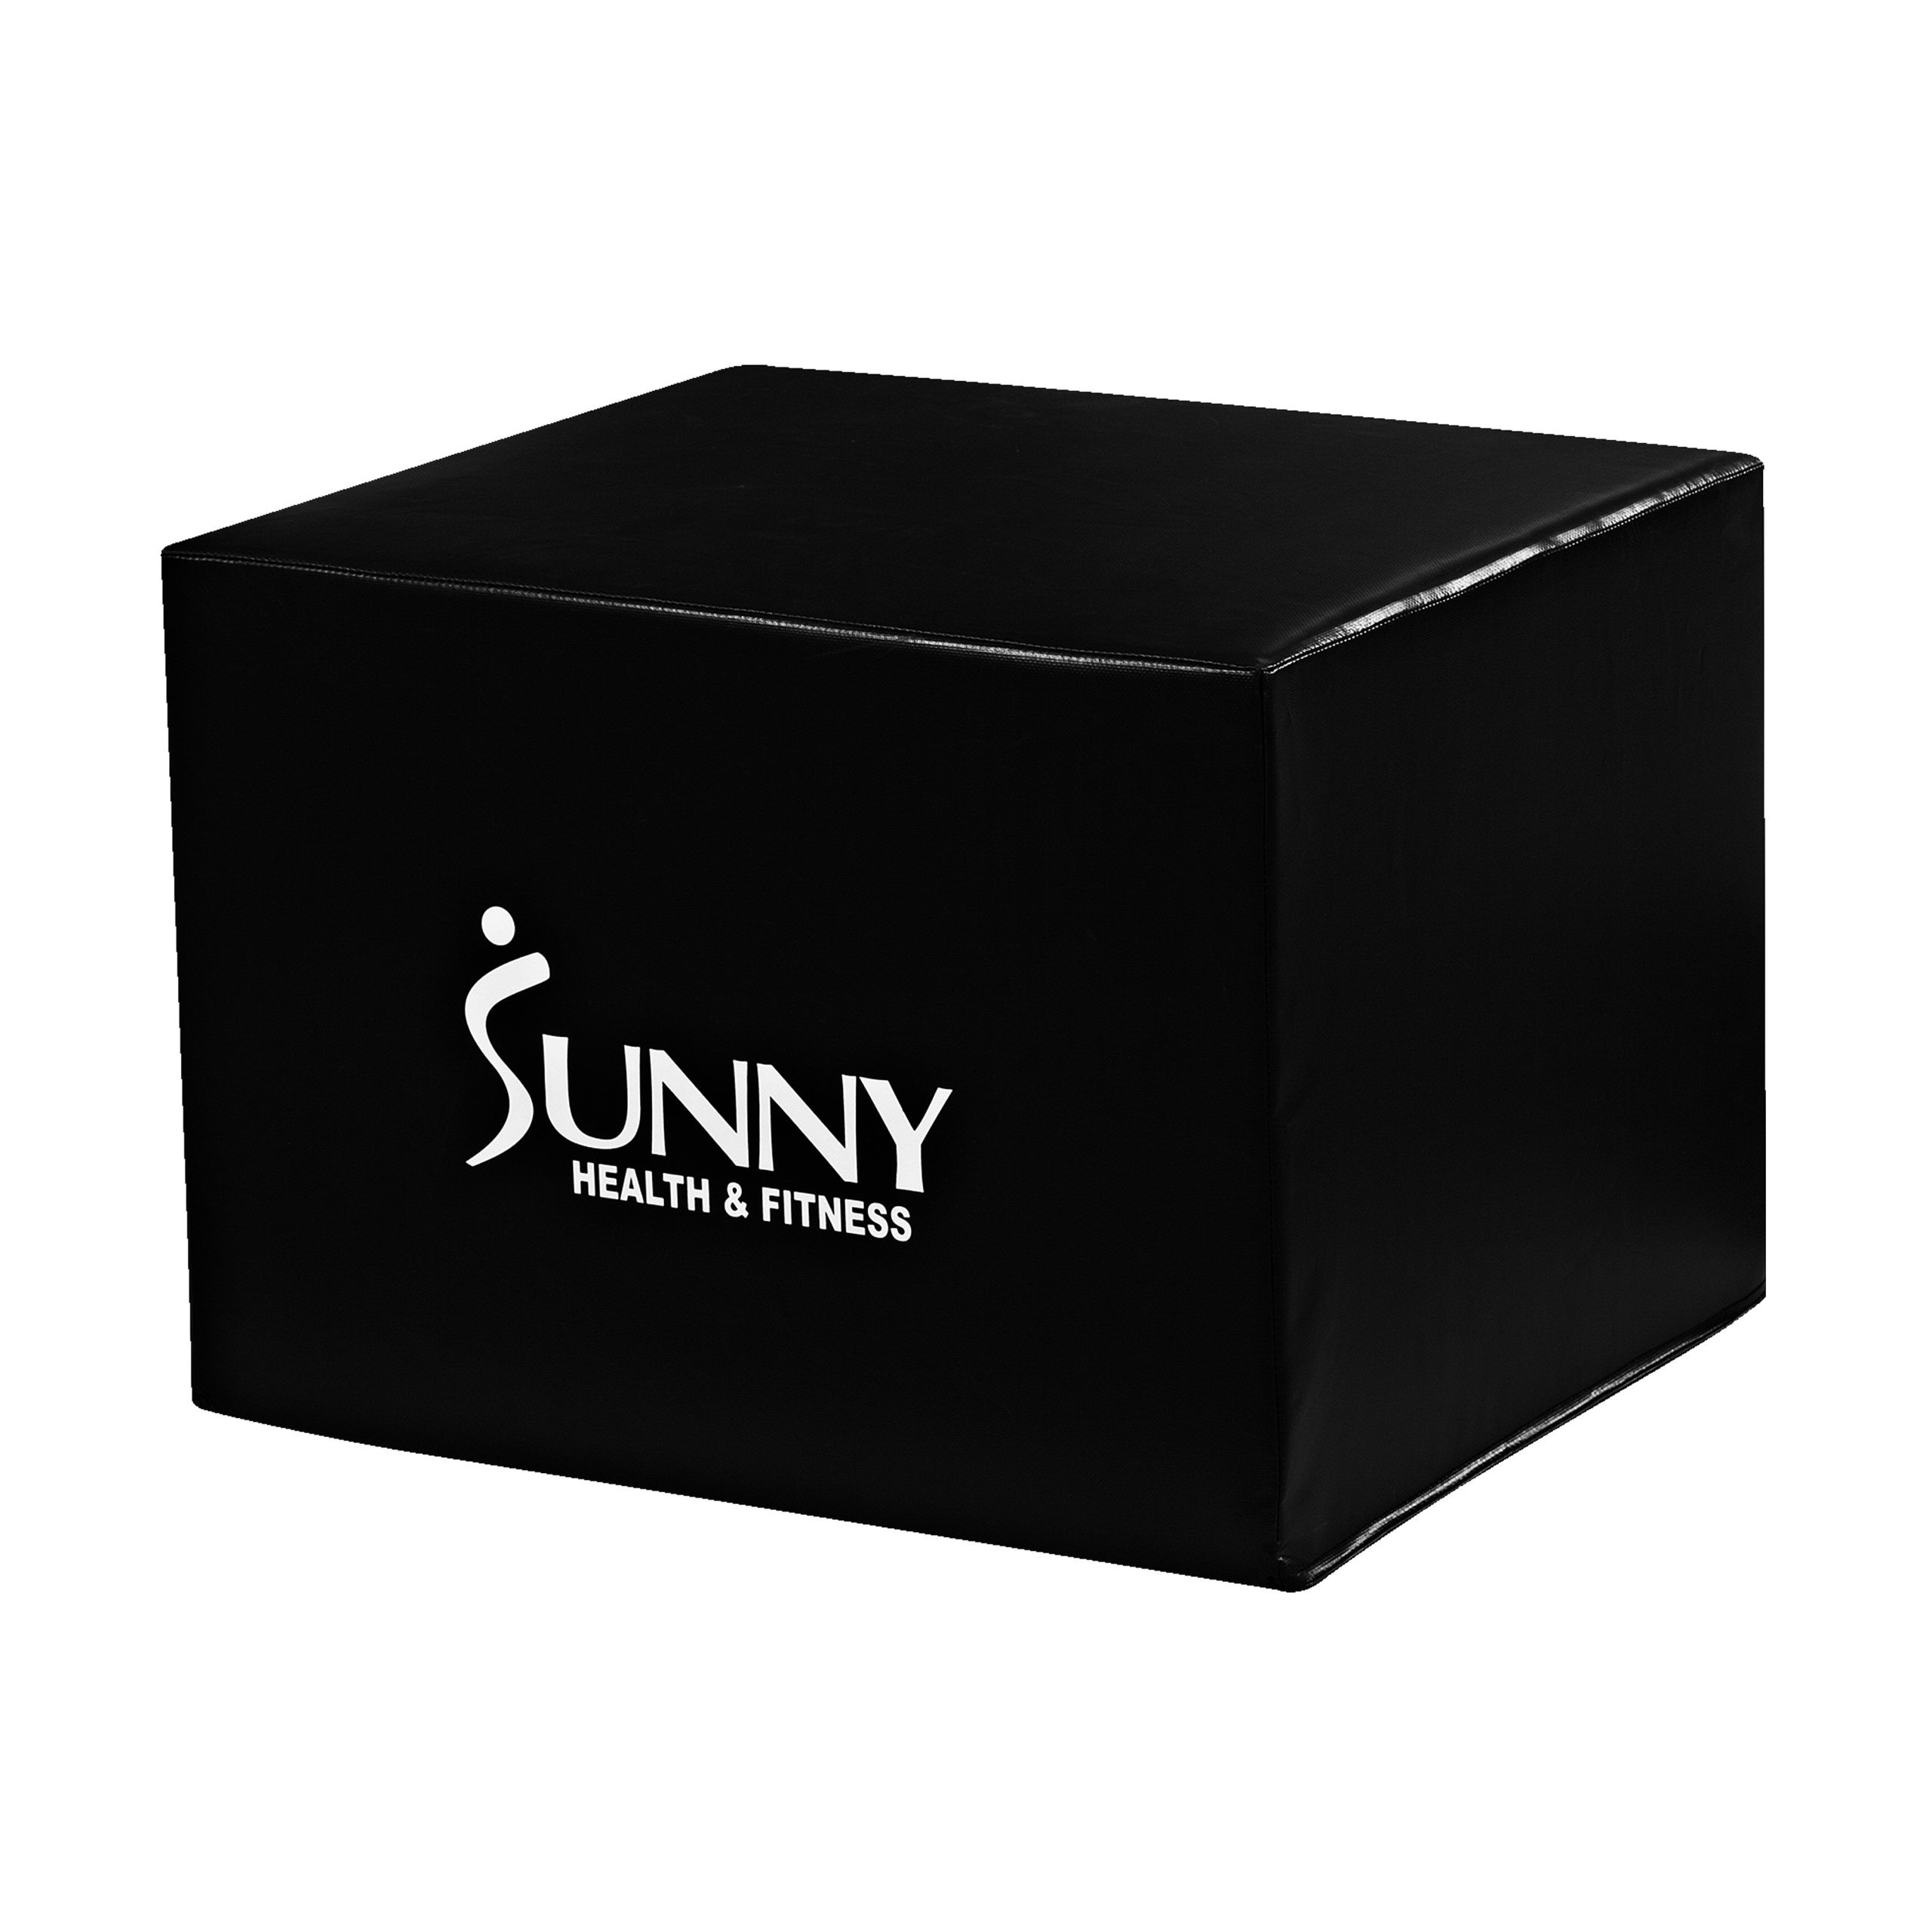 Sunny Health & Fitness No. 072 3-in-1 Foam Plyo Box